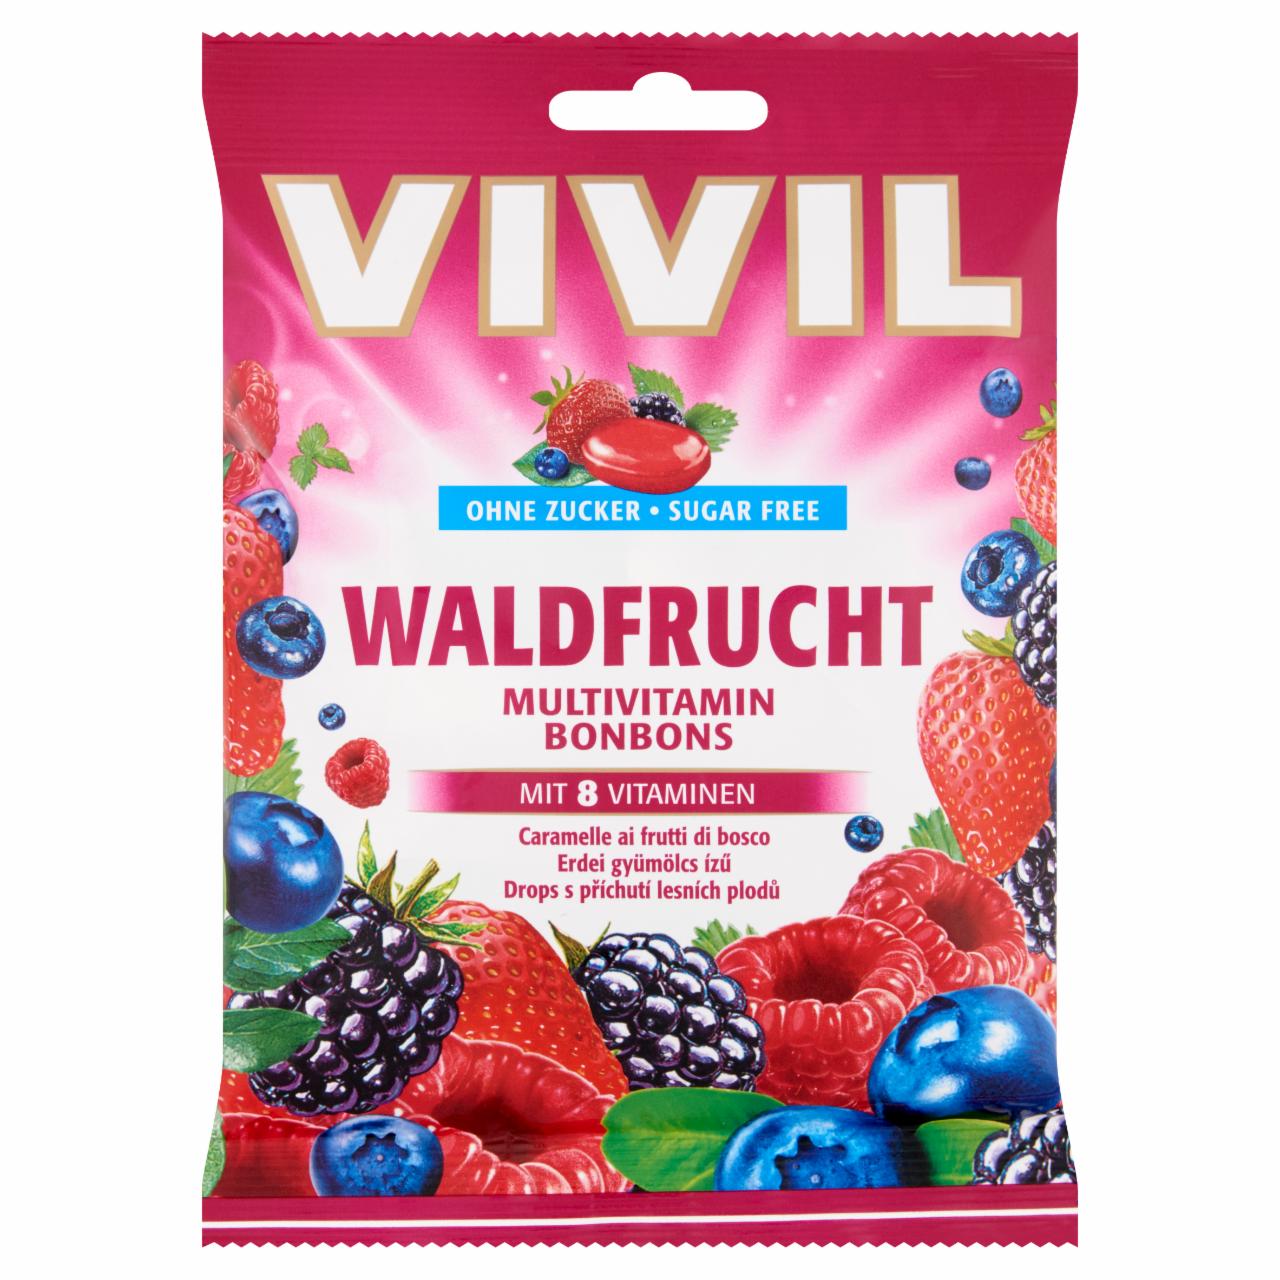 Képek - Vivil cukormentes erdei gyümölcs ízű töltetlen keménycukorka édesítőszerekkel és vitaminokkal 60 g